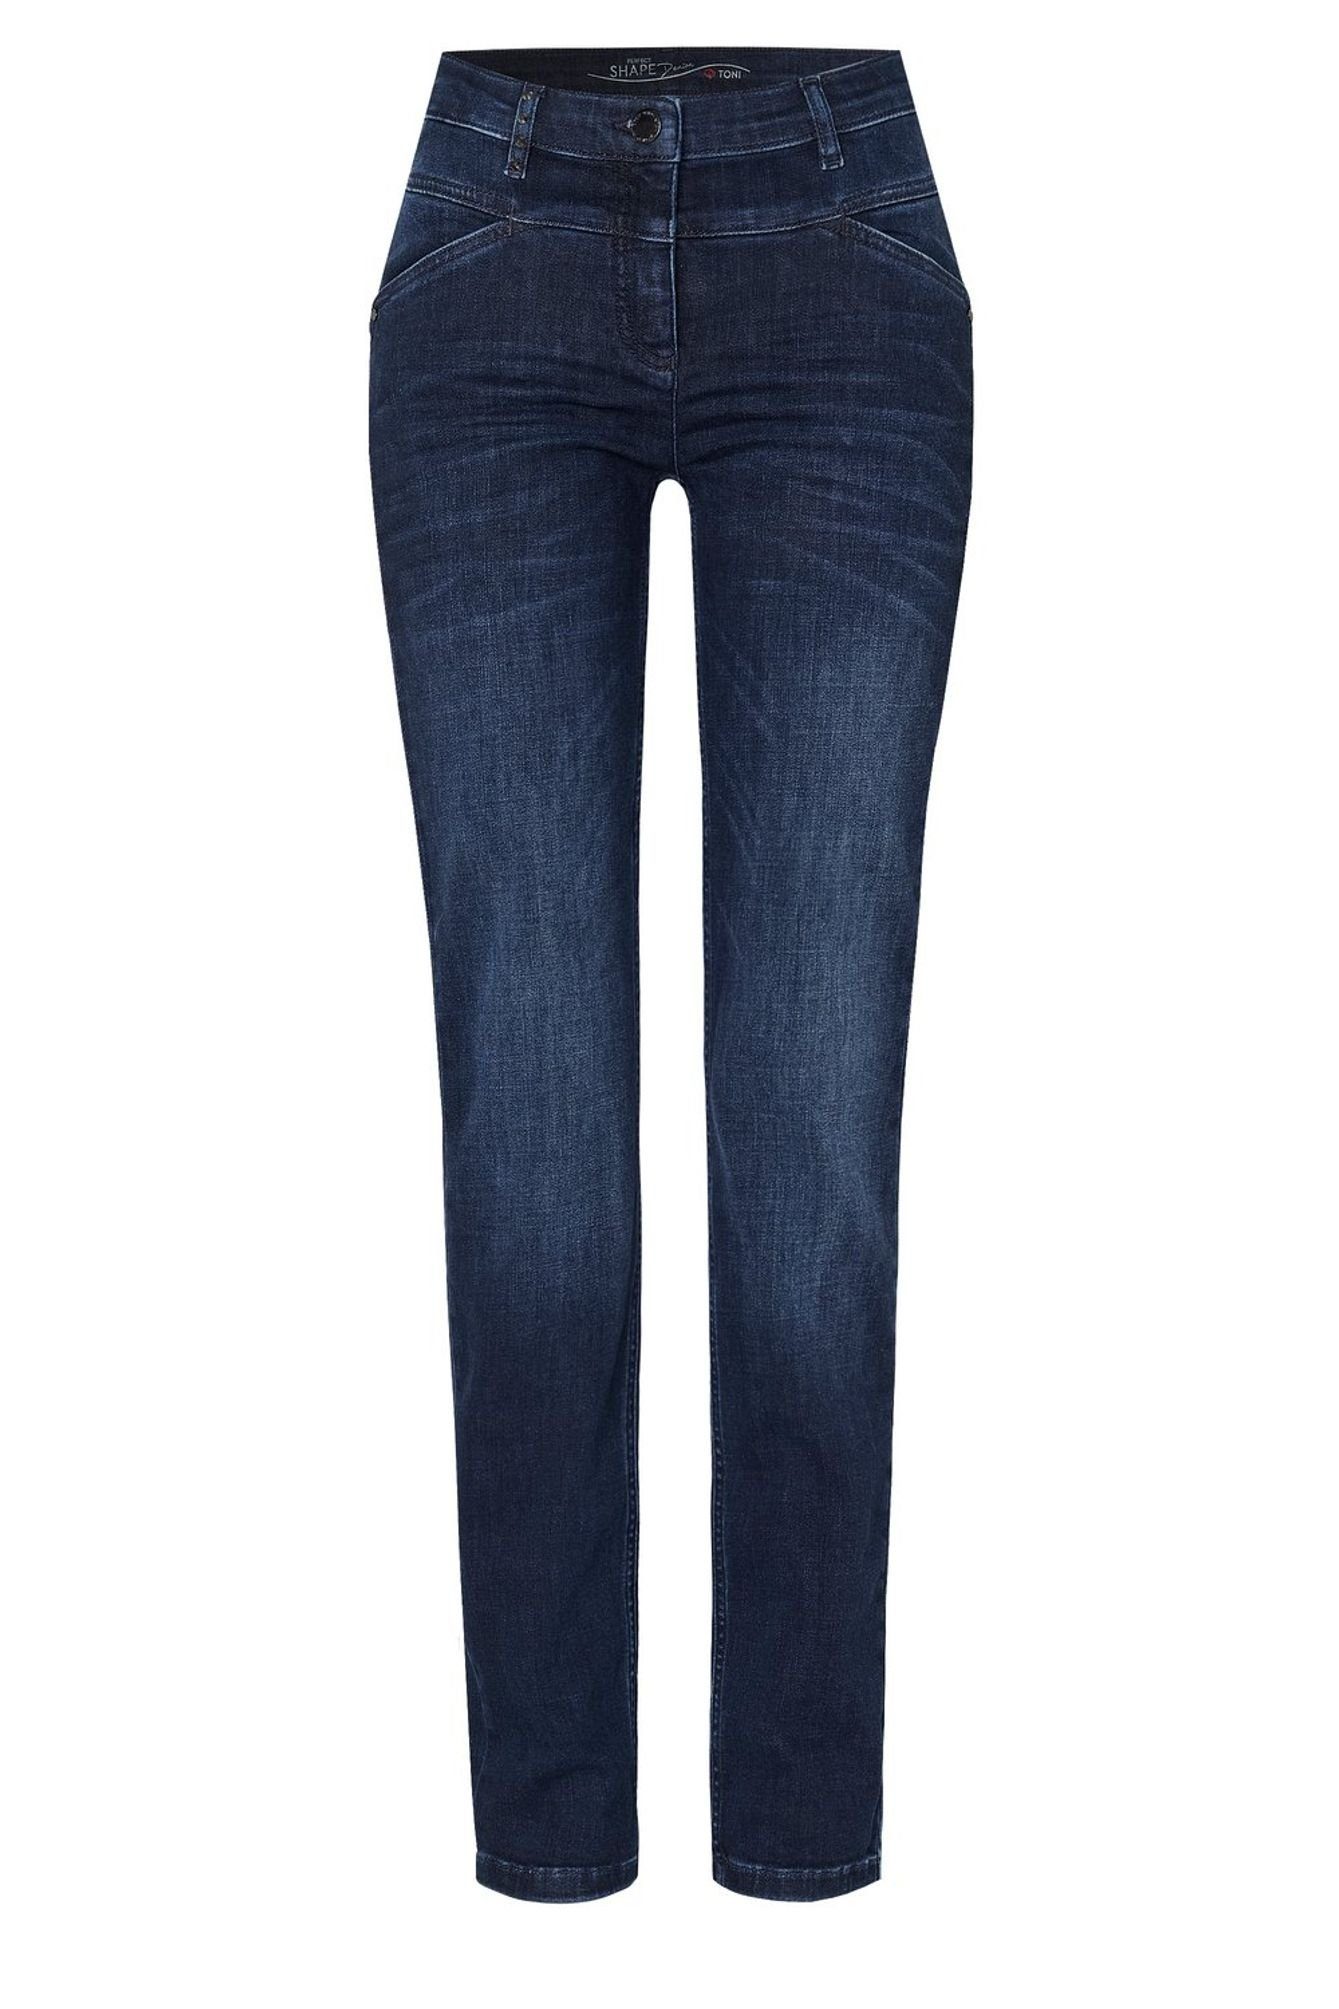 TONI 5-Pocket-Jeans 11-01 1106-17 used (574) 5-Pocket-Design blue